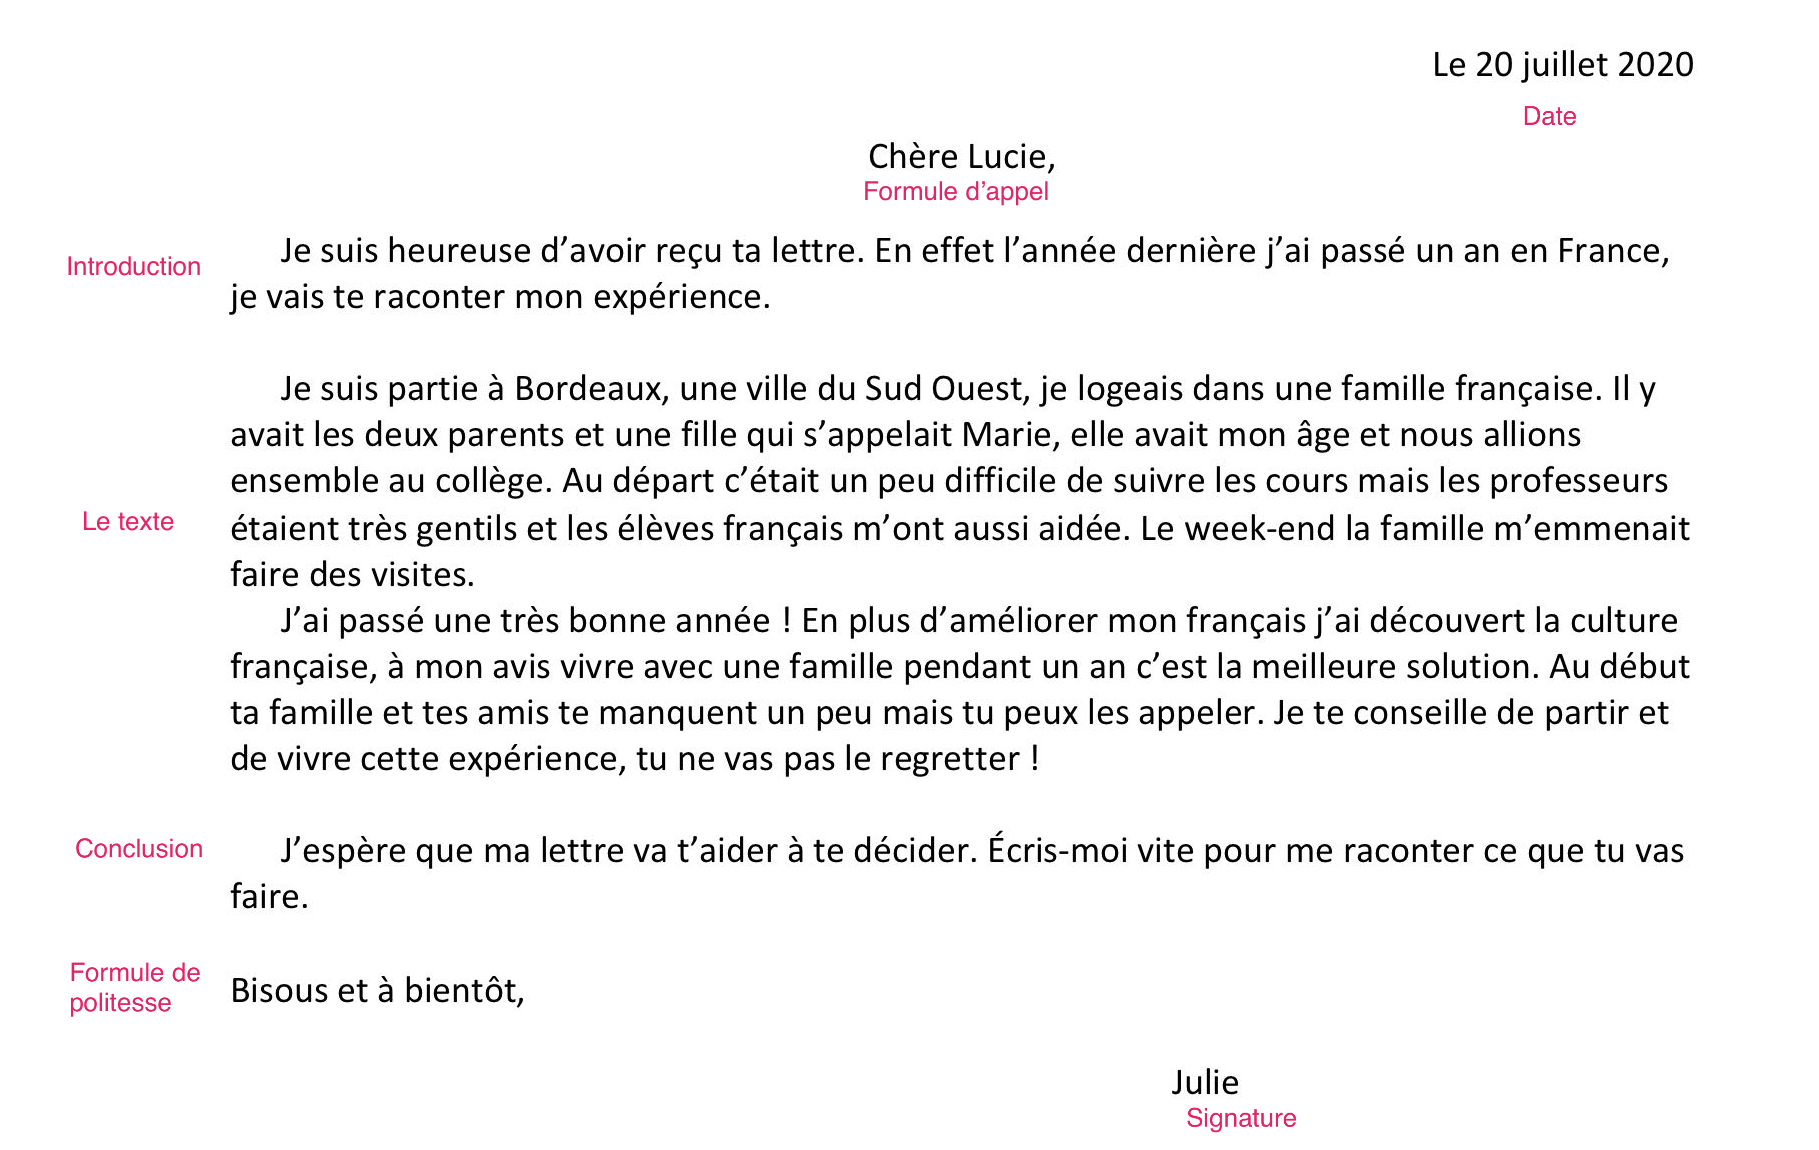 Un Exemple de Lettre Formelle en Français, PDF